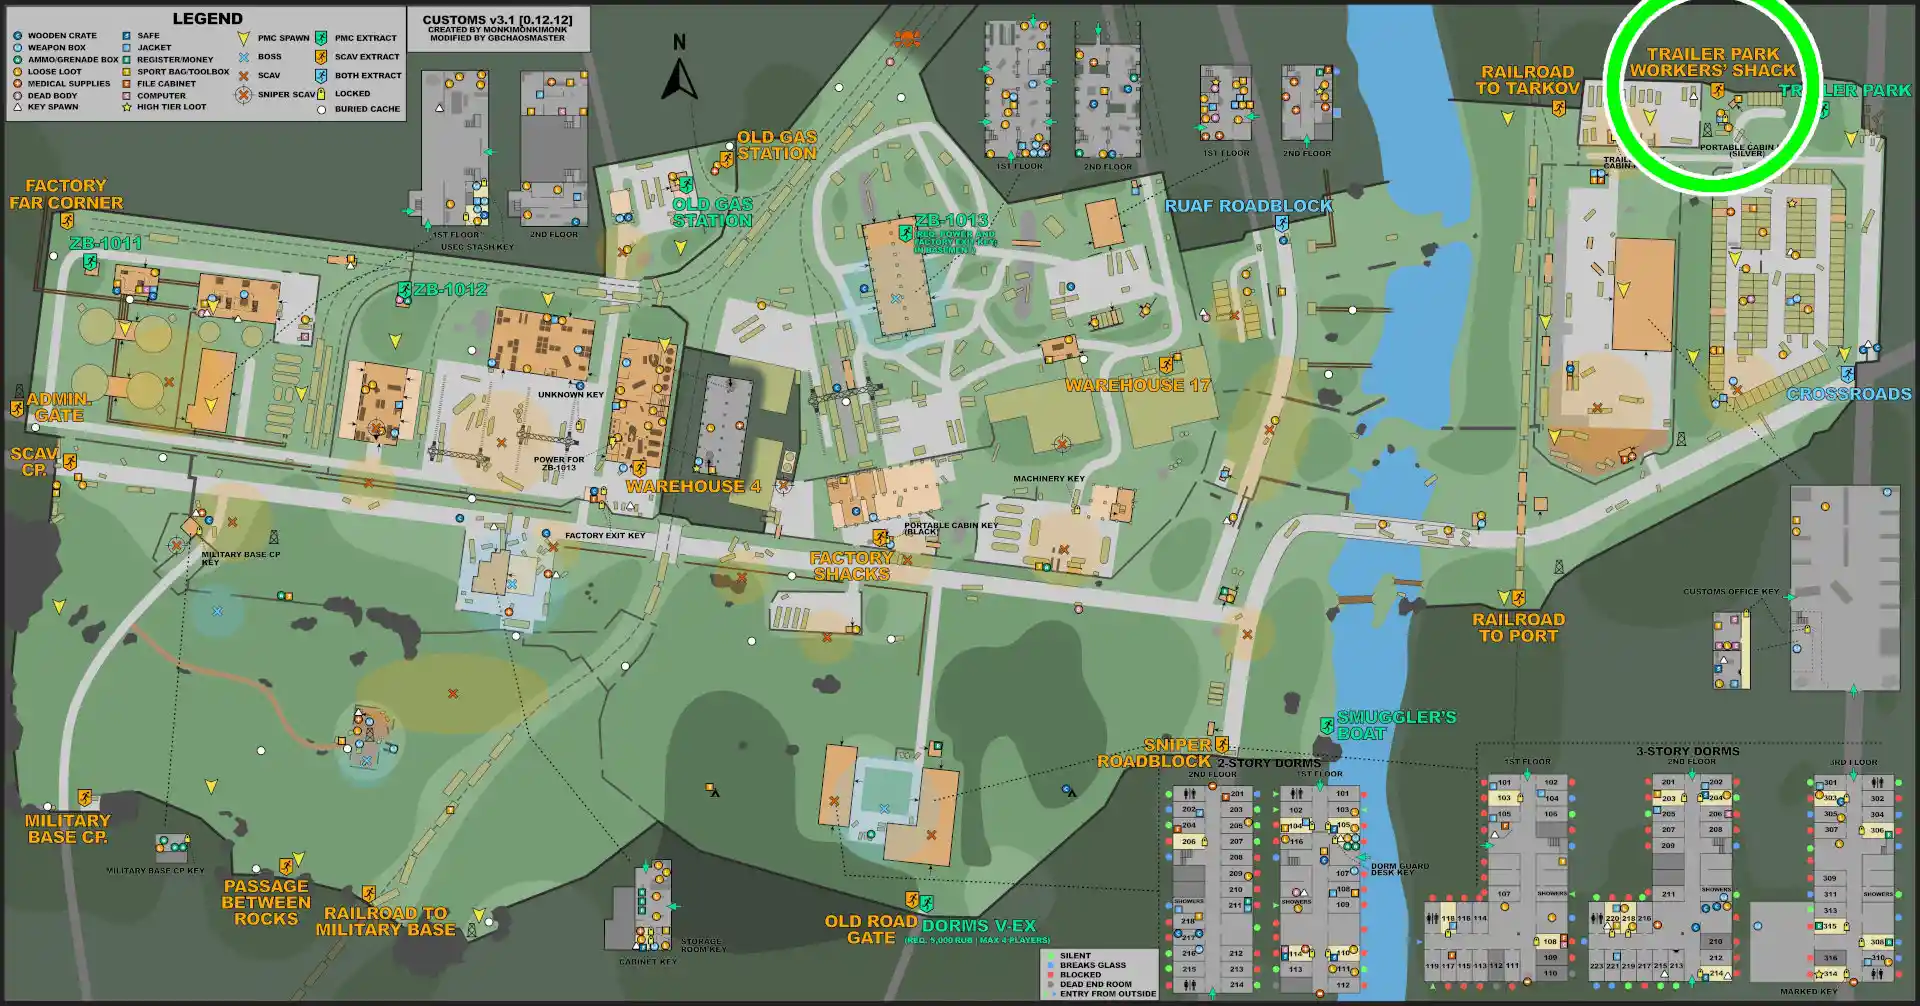 CUSTOMS-ESC-Trailer_Park_Workers'_Shack-MAP.jpg